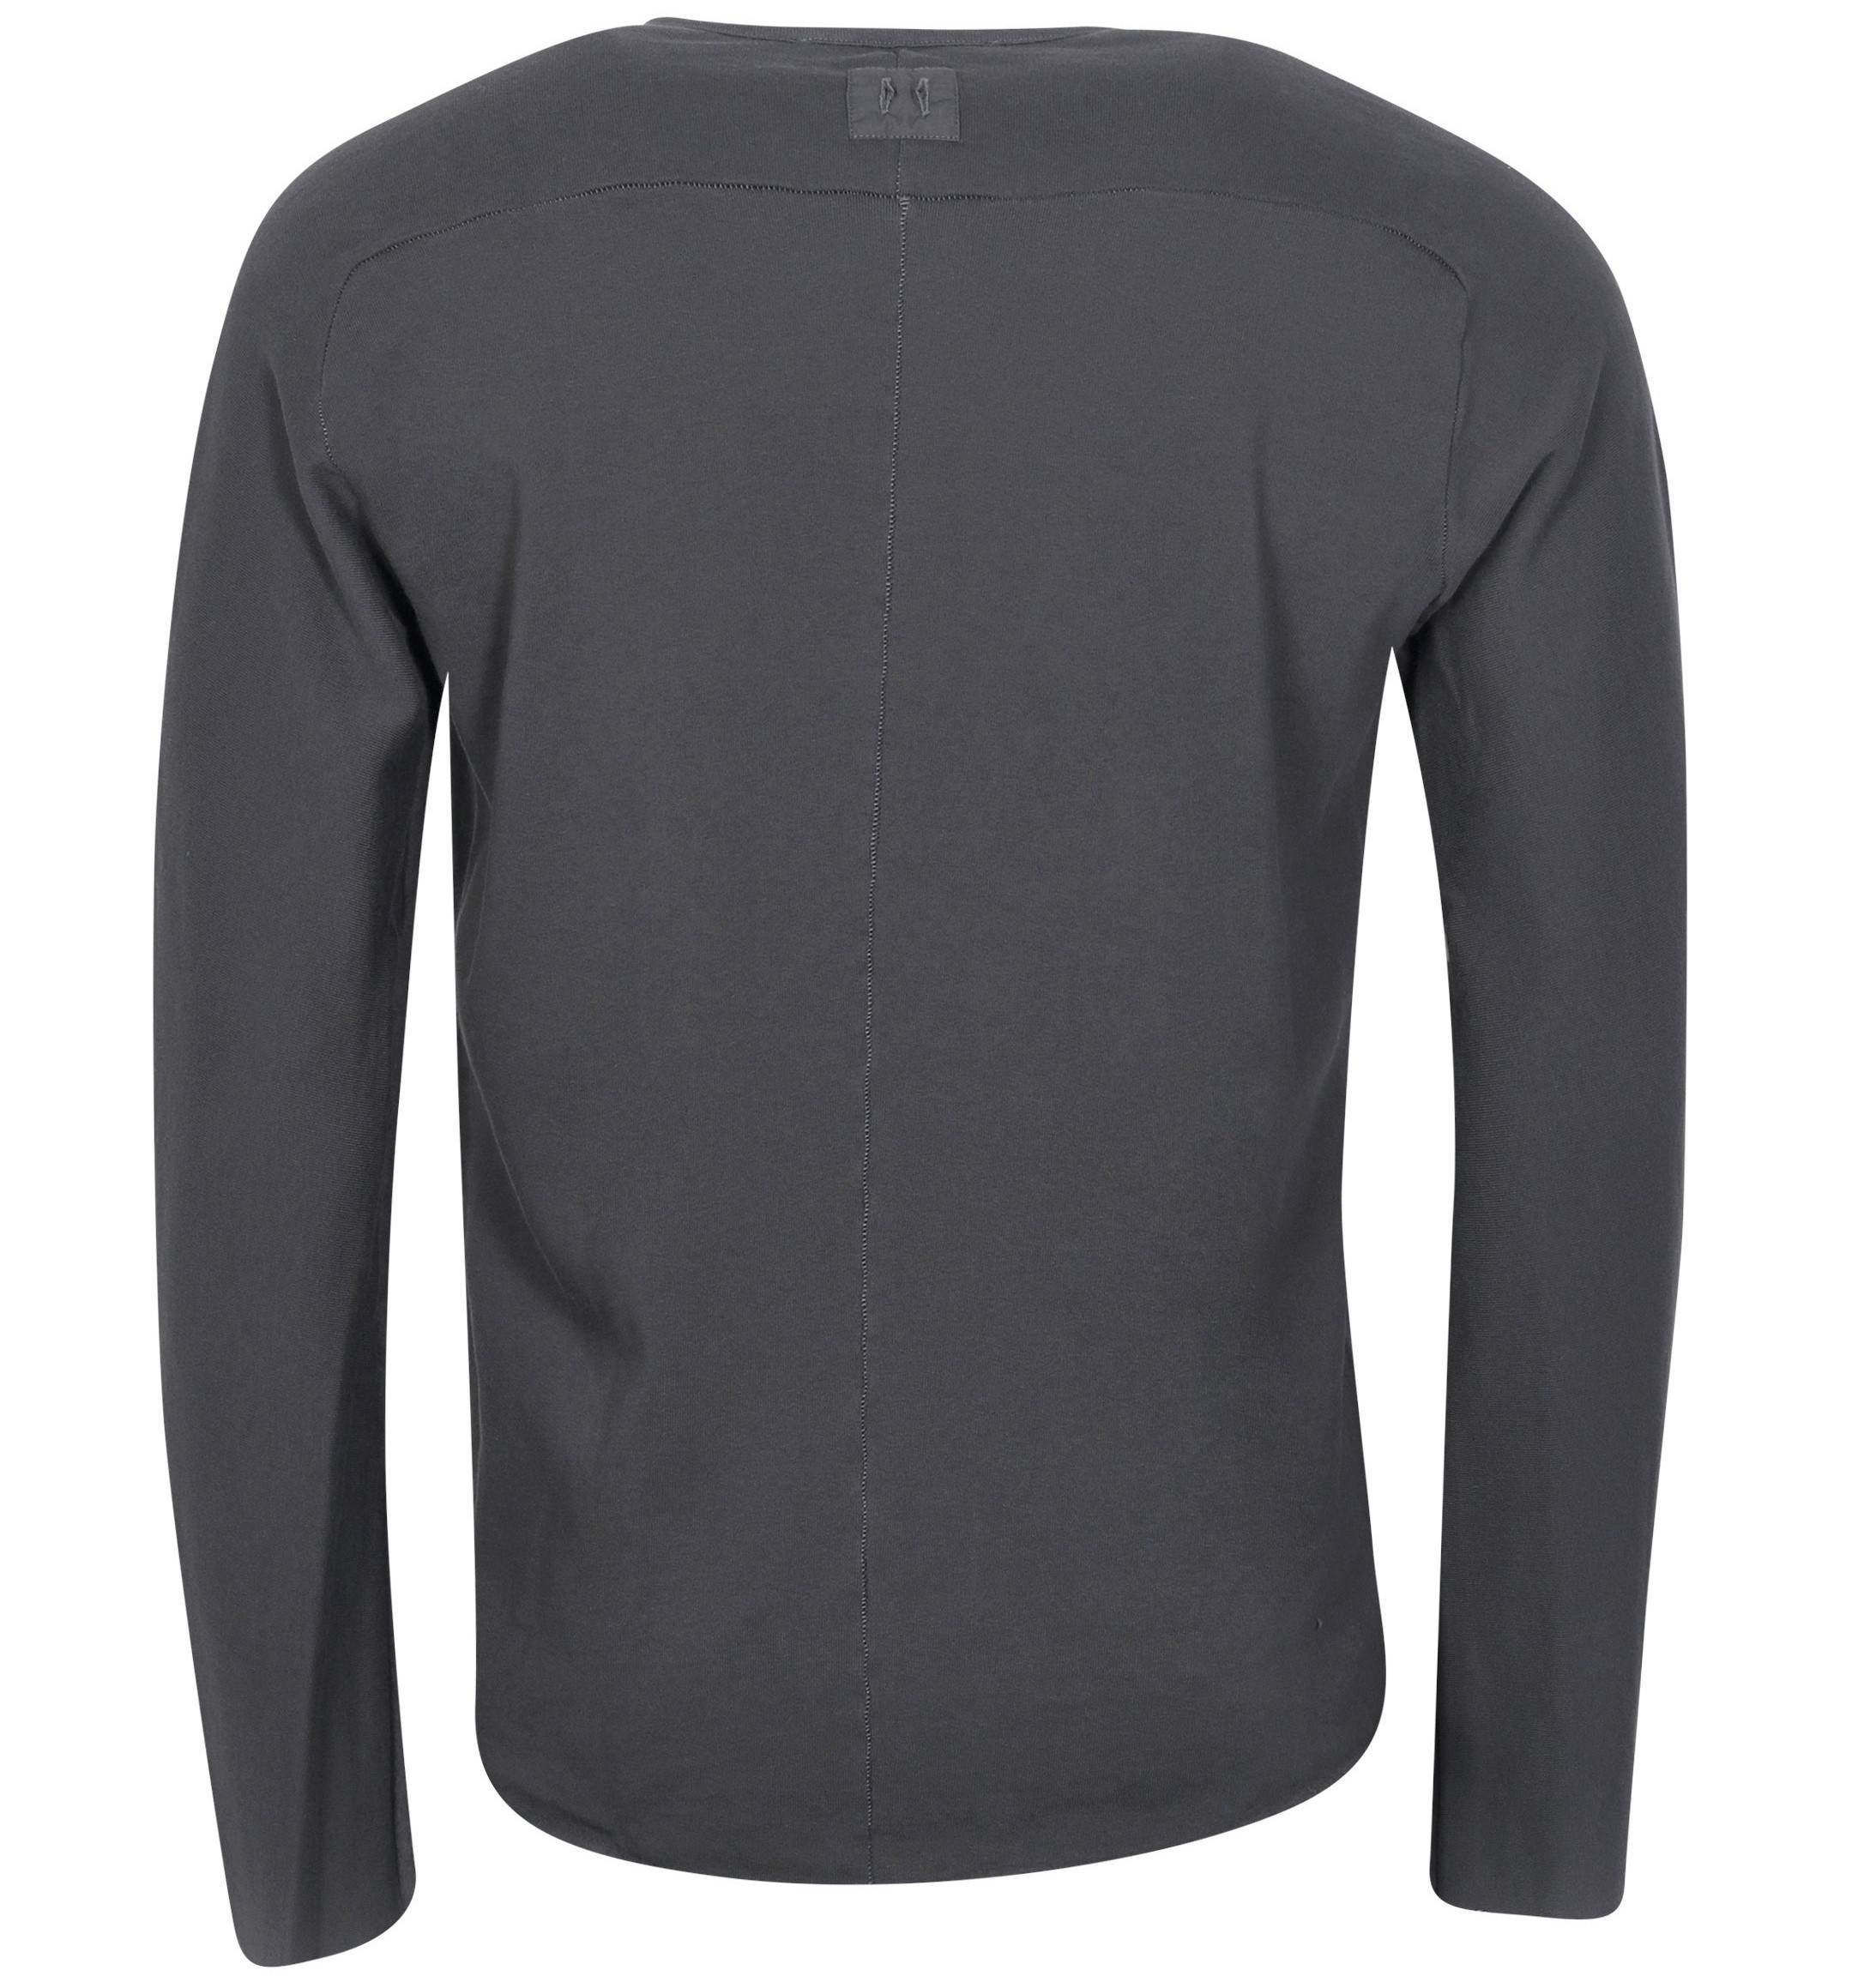 HANNES ROETHER Soft Cotton Sweatshirt in Dark Grey S